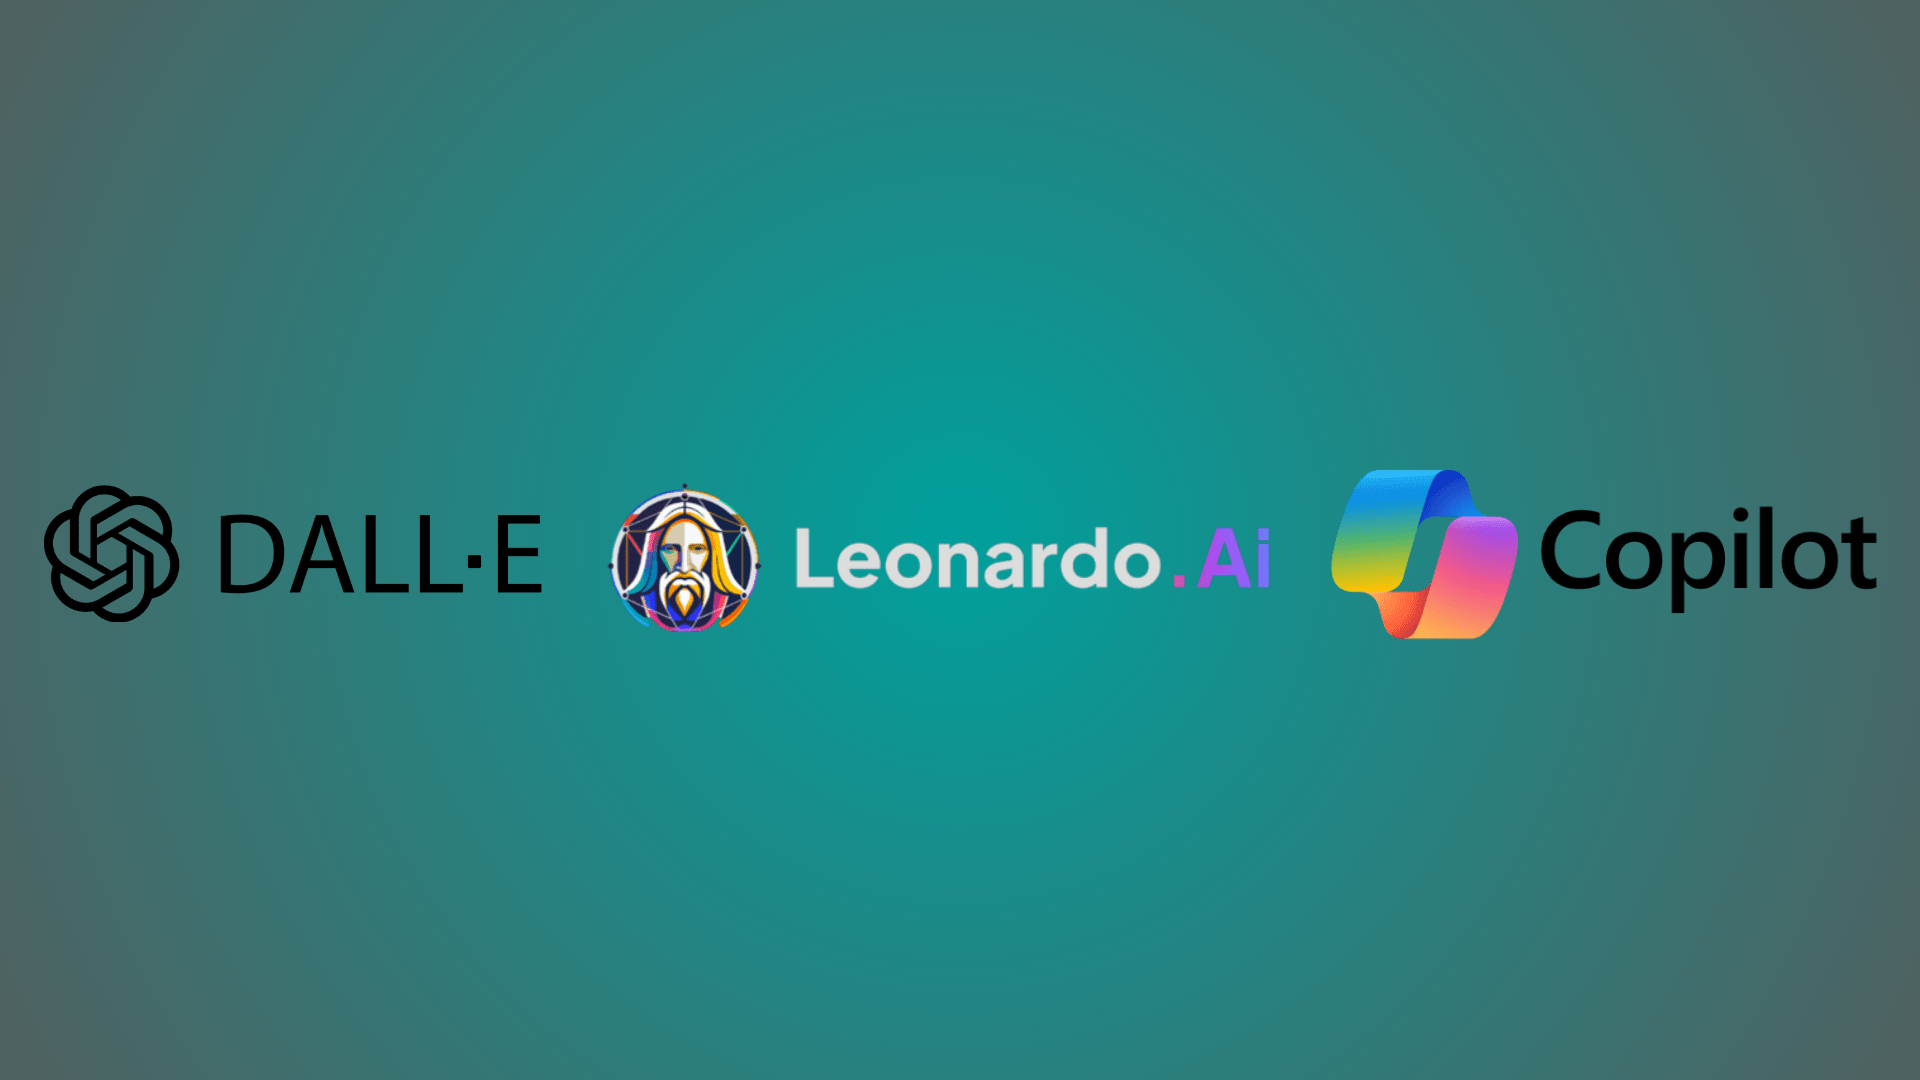 Logotipos de las tres Inteligencias Artificiales generadoras de imágenes que se mencionan